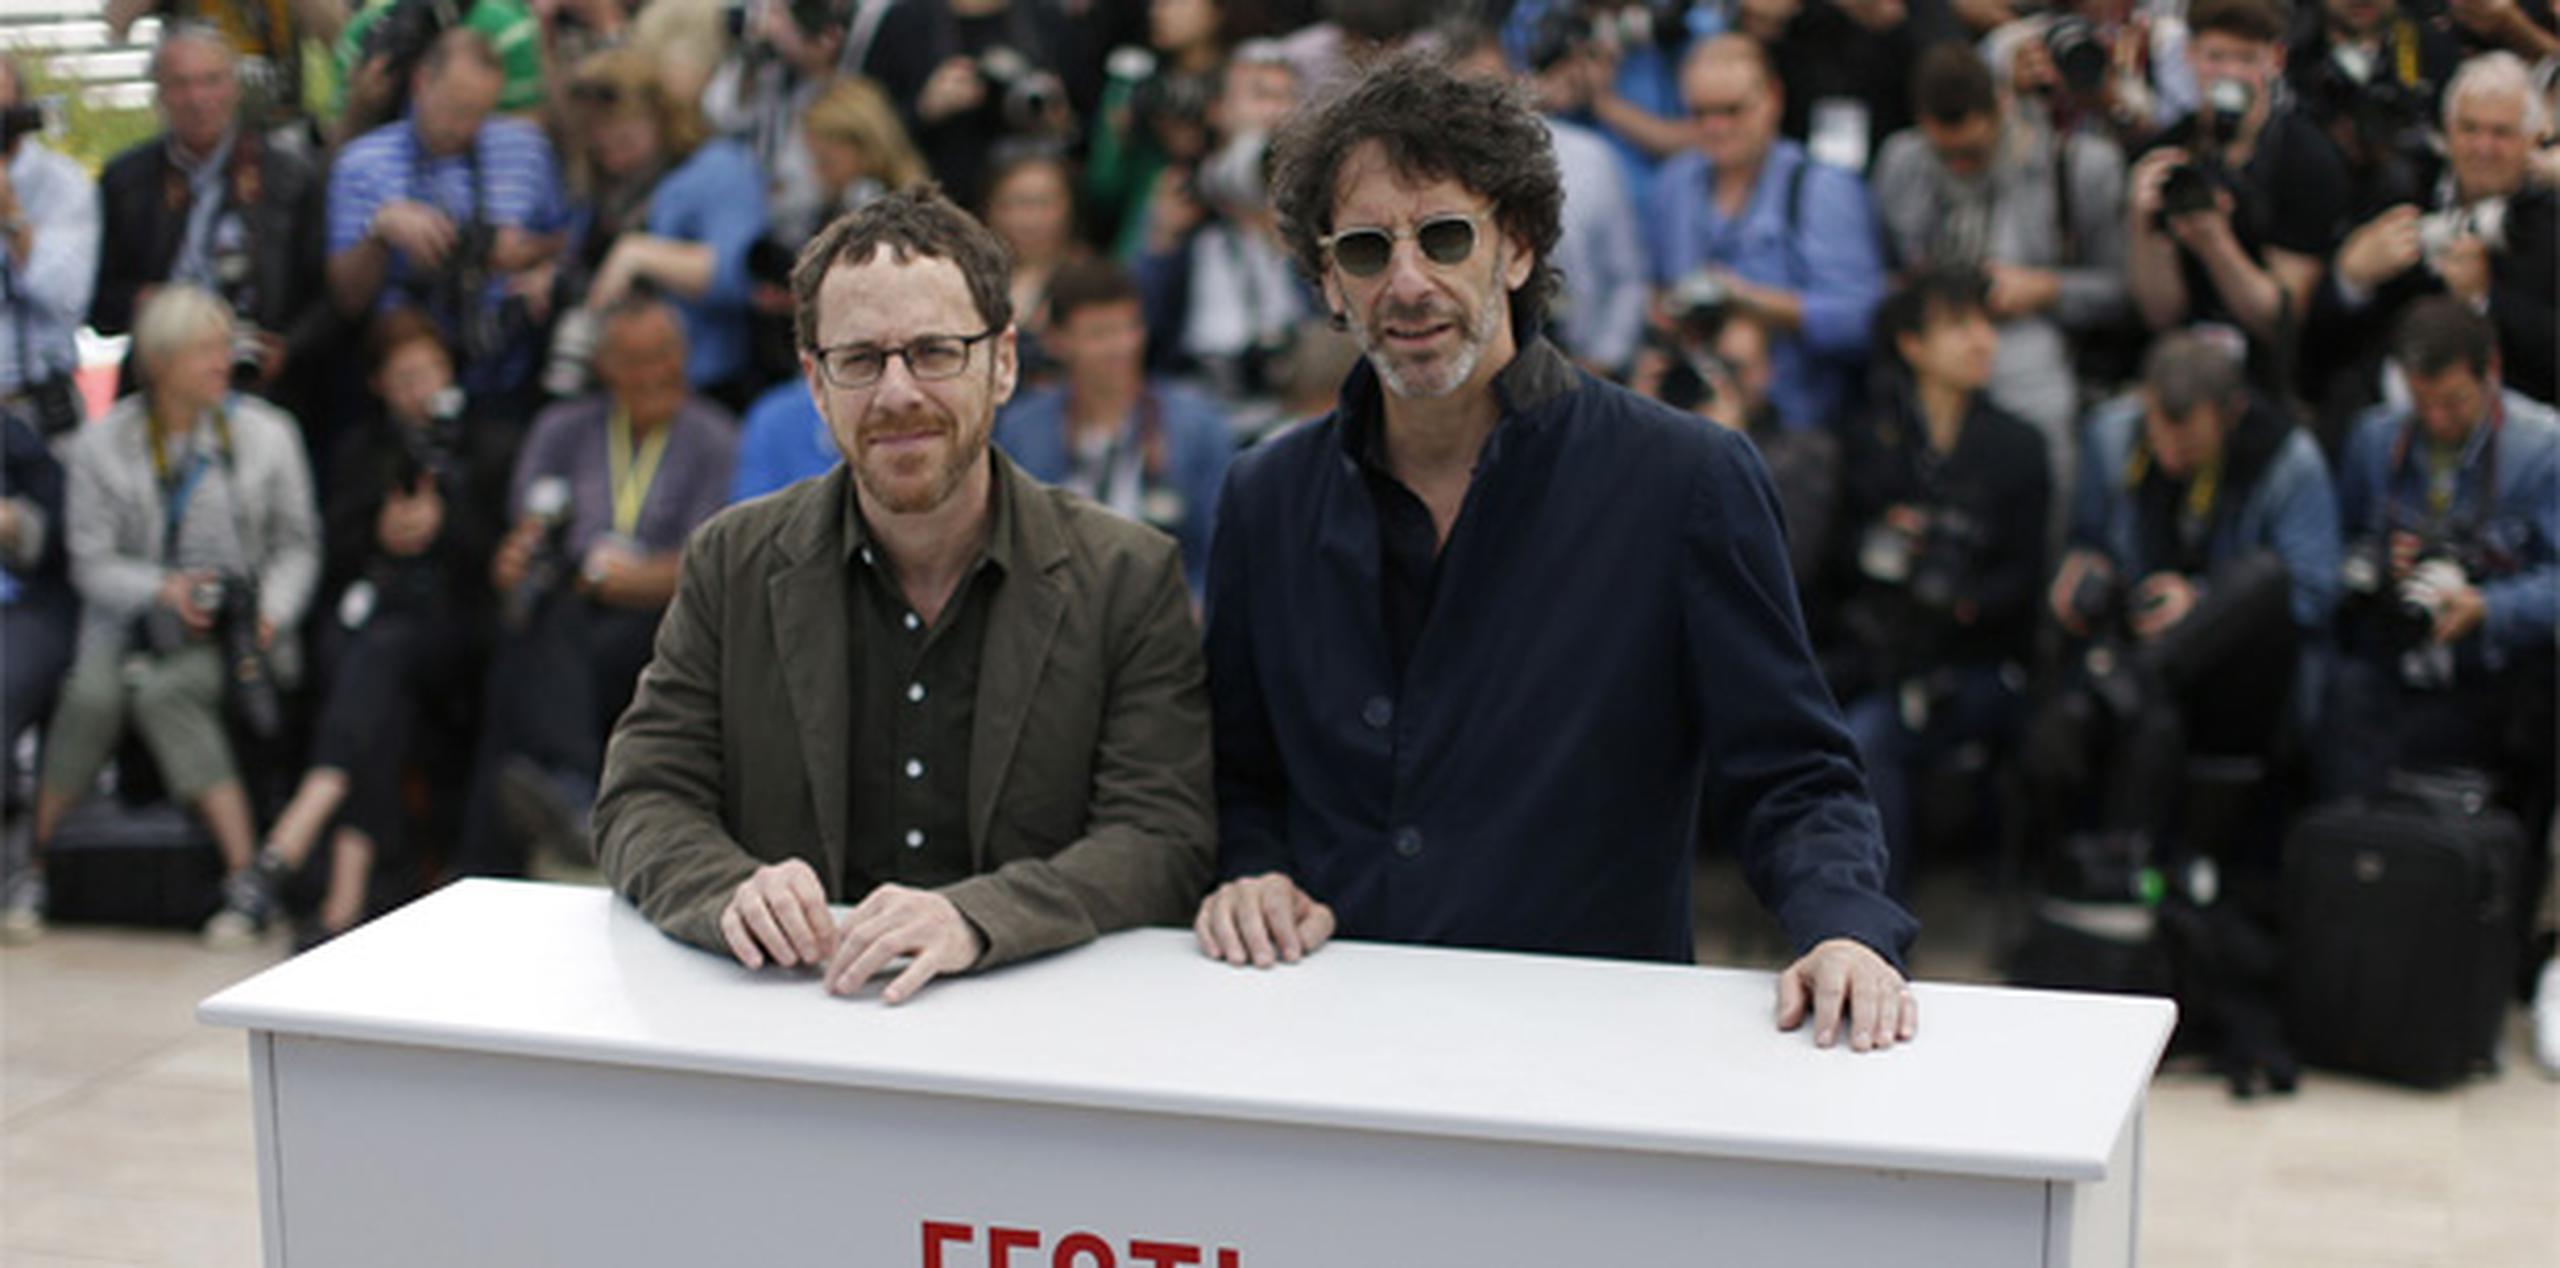 Ambos cineastas, que lograron la Palma de Oro en 1991 con "Barton Fink", destacan la importancia que Cannes ha tenido desde el principio de su carrera cinematográfica, hace 30 años. (Archivo)